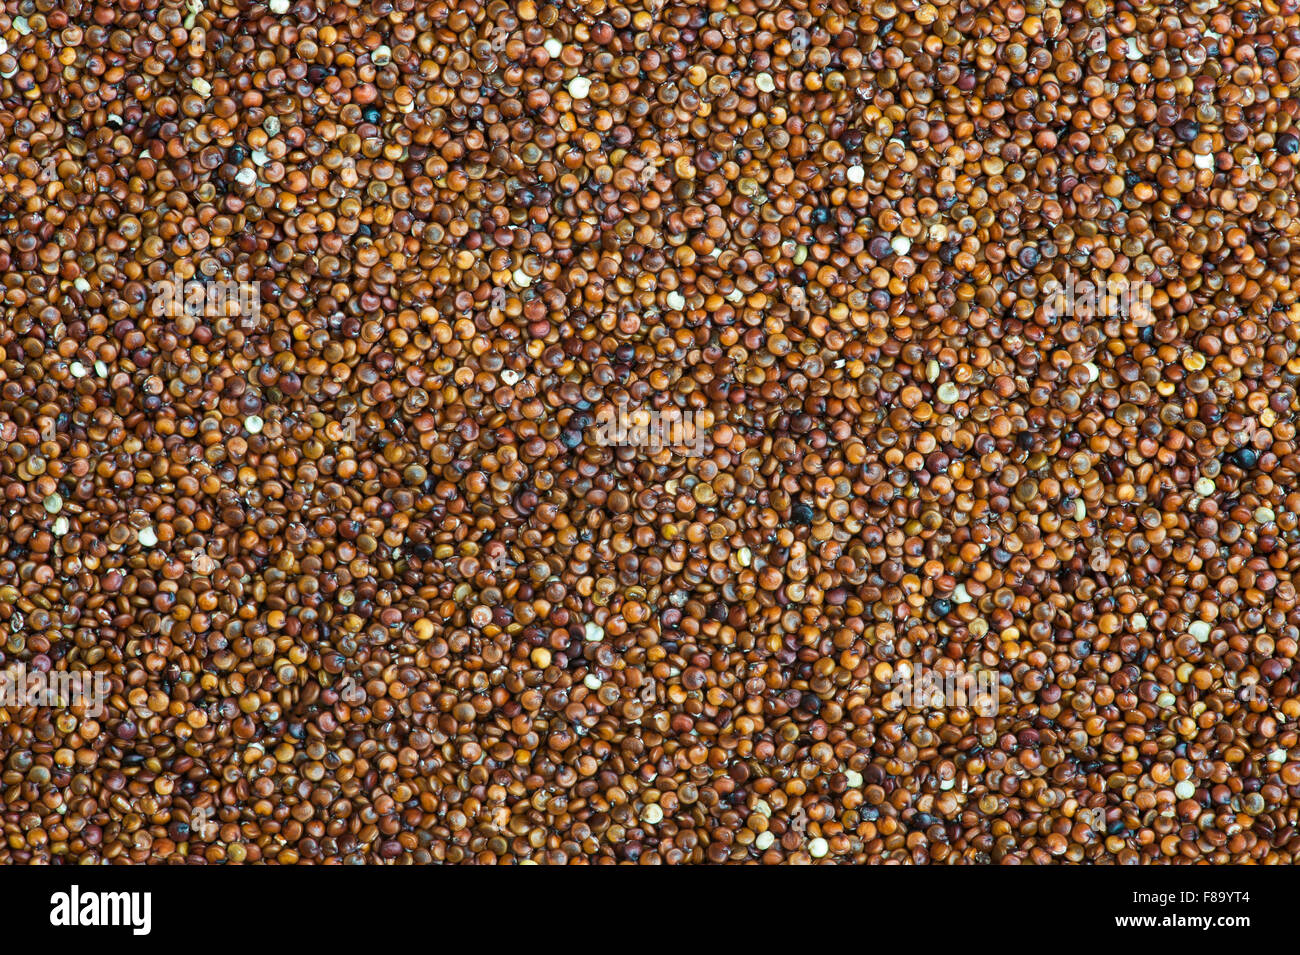 Red Quinoa seeds Stock Photo